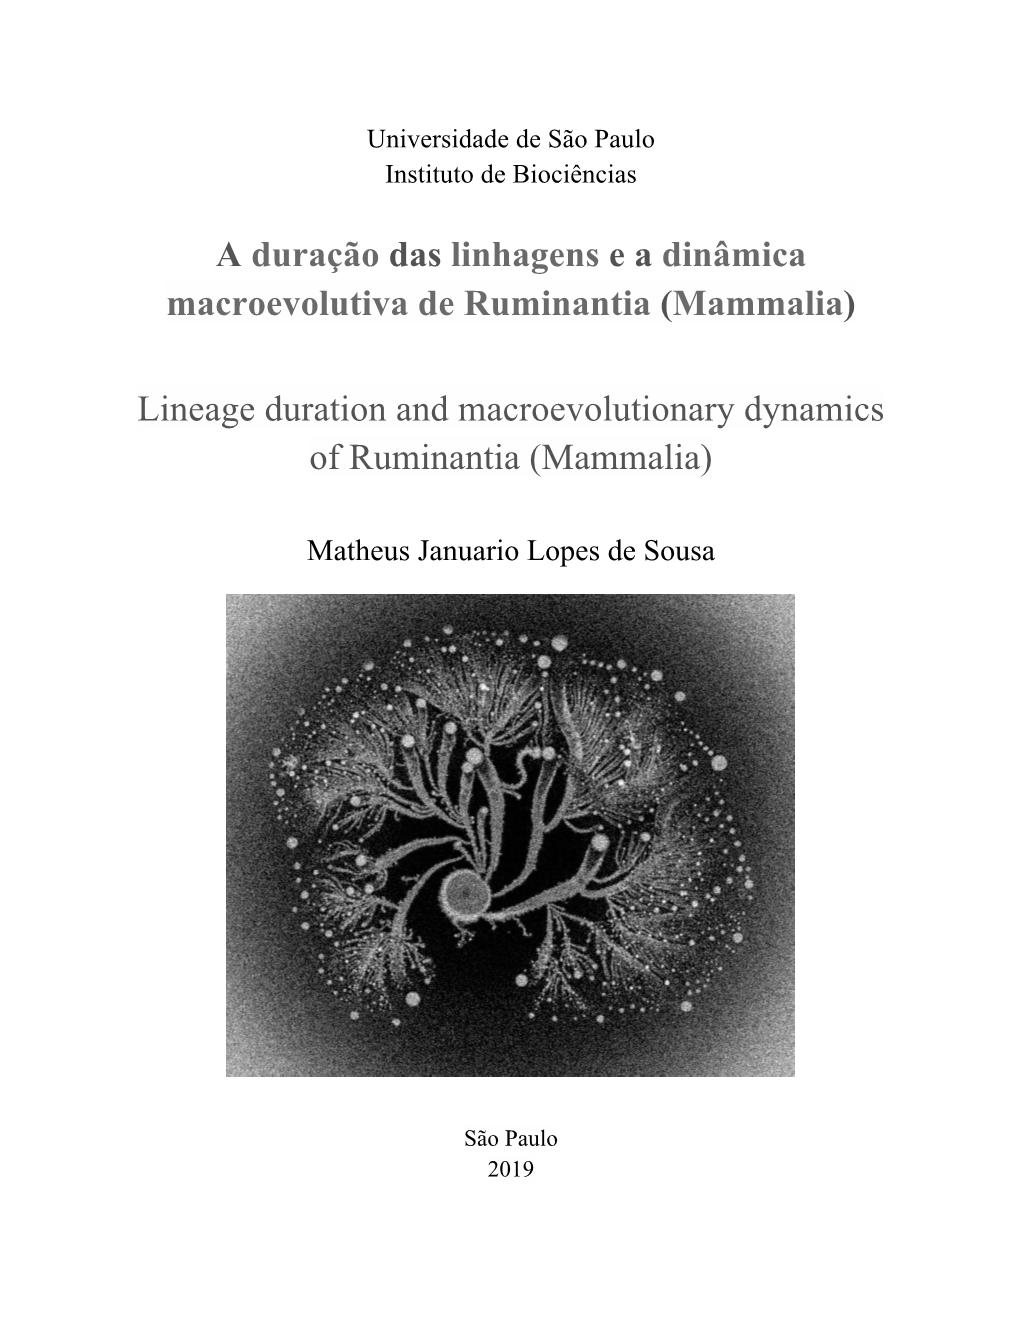 A Duração Das Linhagens E a Dinâmica Macroevolutiva De Ruminantia (Mammalia) Lineage Duration and Macroevolutionary Dynamics